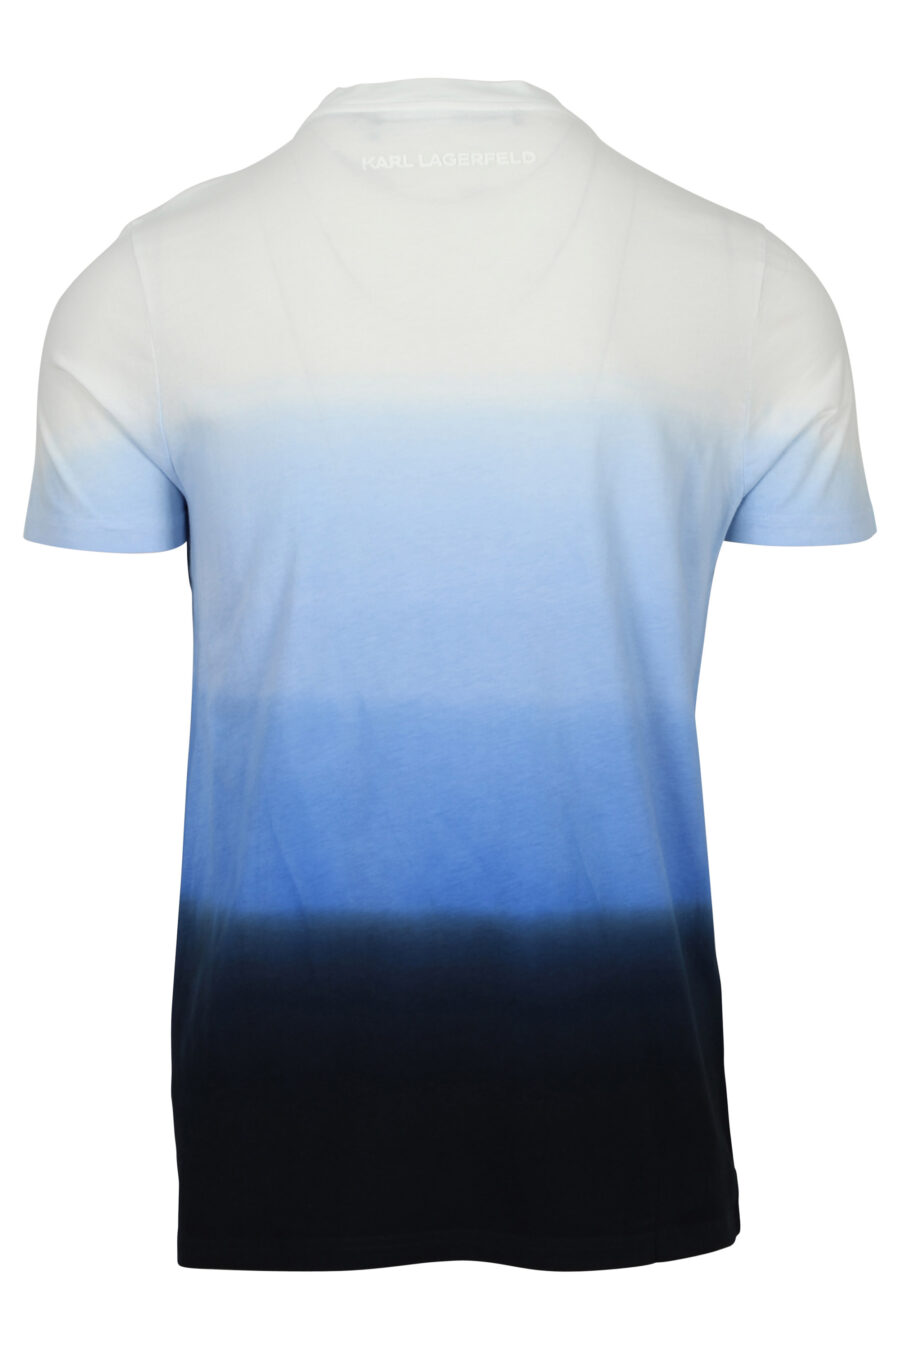 Camiseta en degradé azul con minilogo - 4062226789400 1